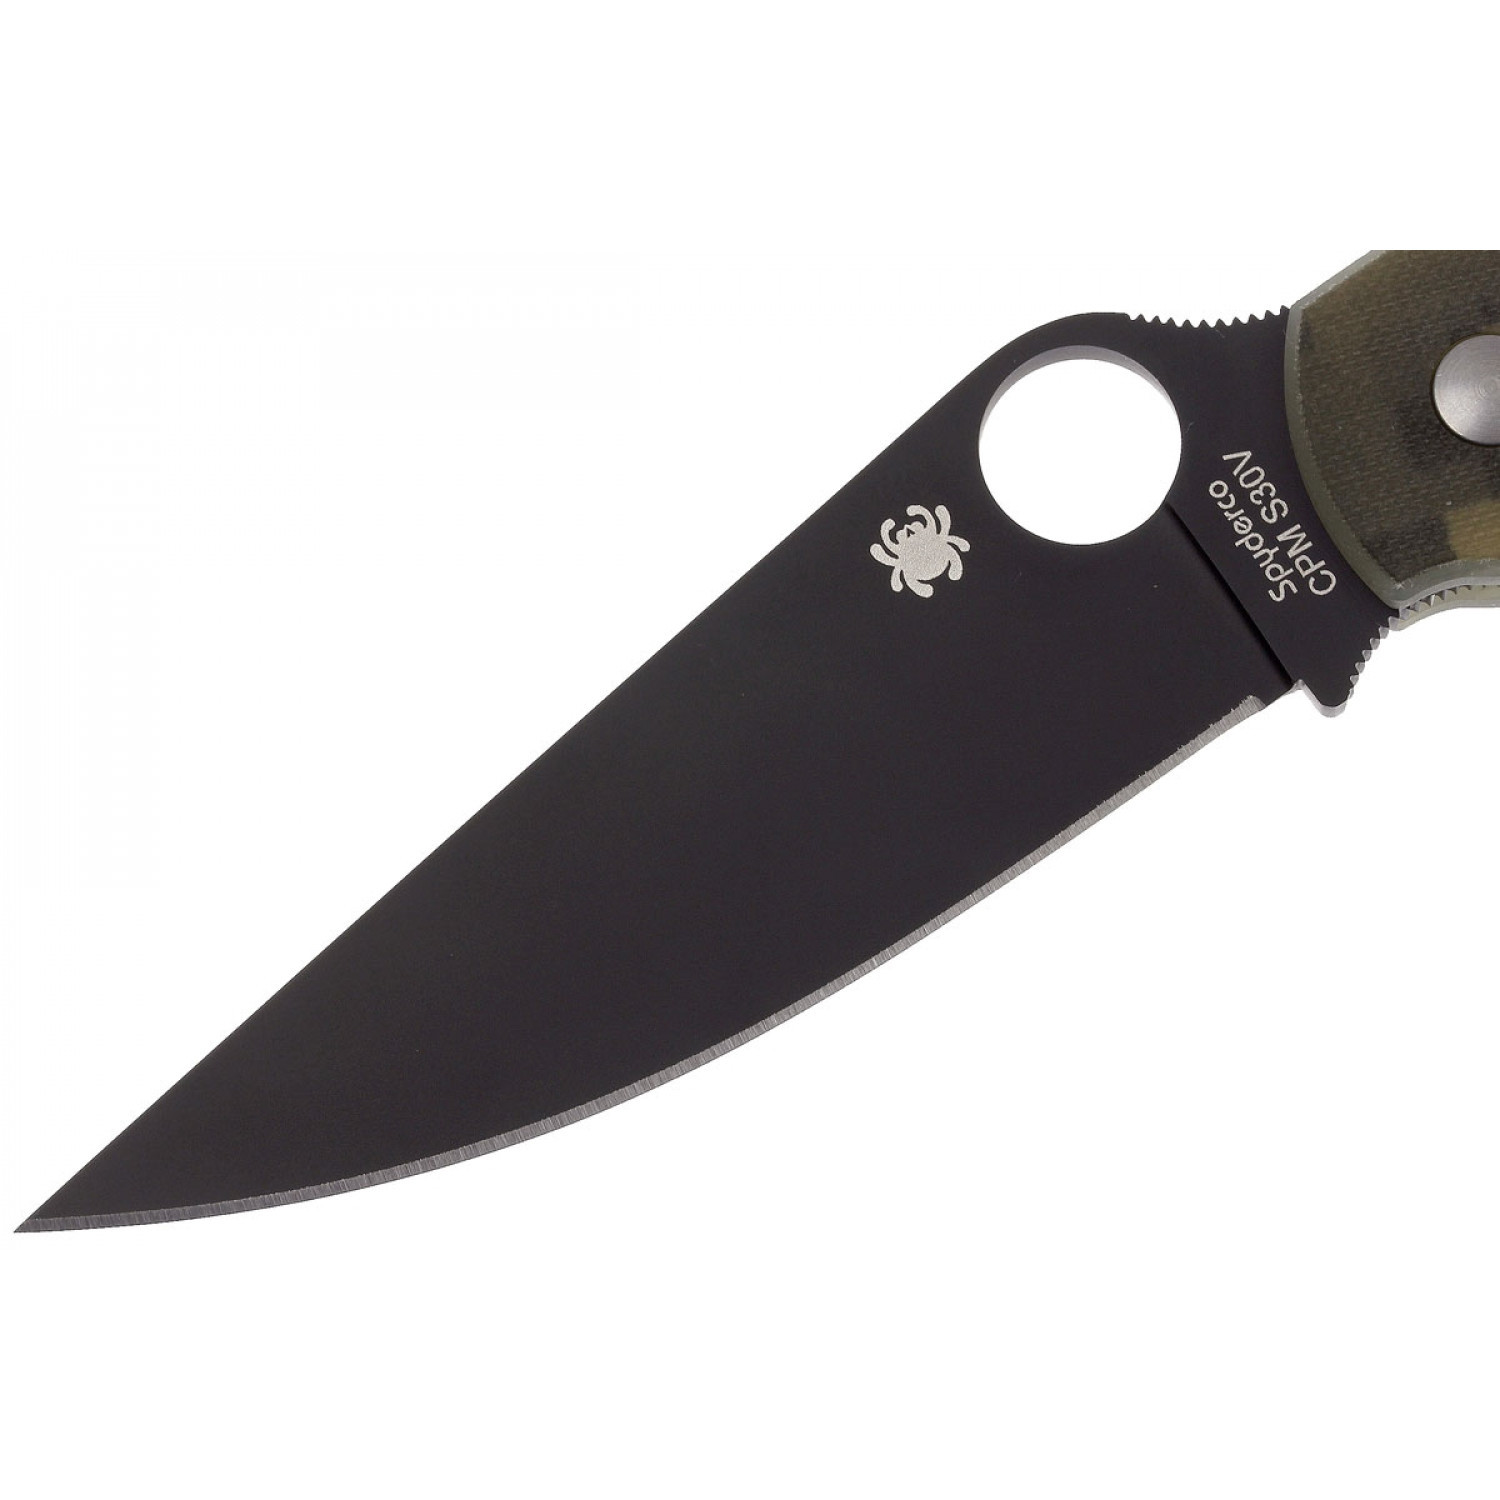 фото Нож складной military model - spyderco c36gpcmobk, сталь crucible cpm® s30v™ black dlc coated plain, рукоять стеклотекстолит g10, цифровой камуфляж (digi camo)